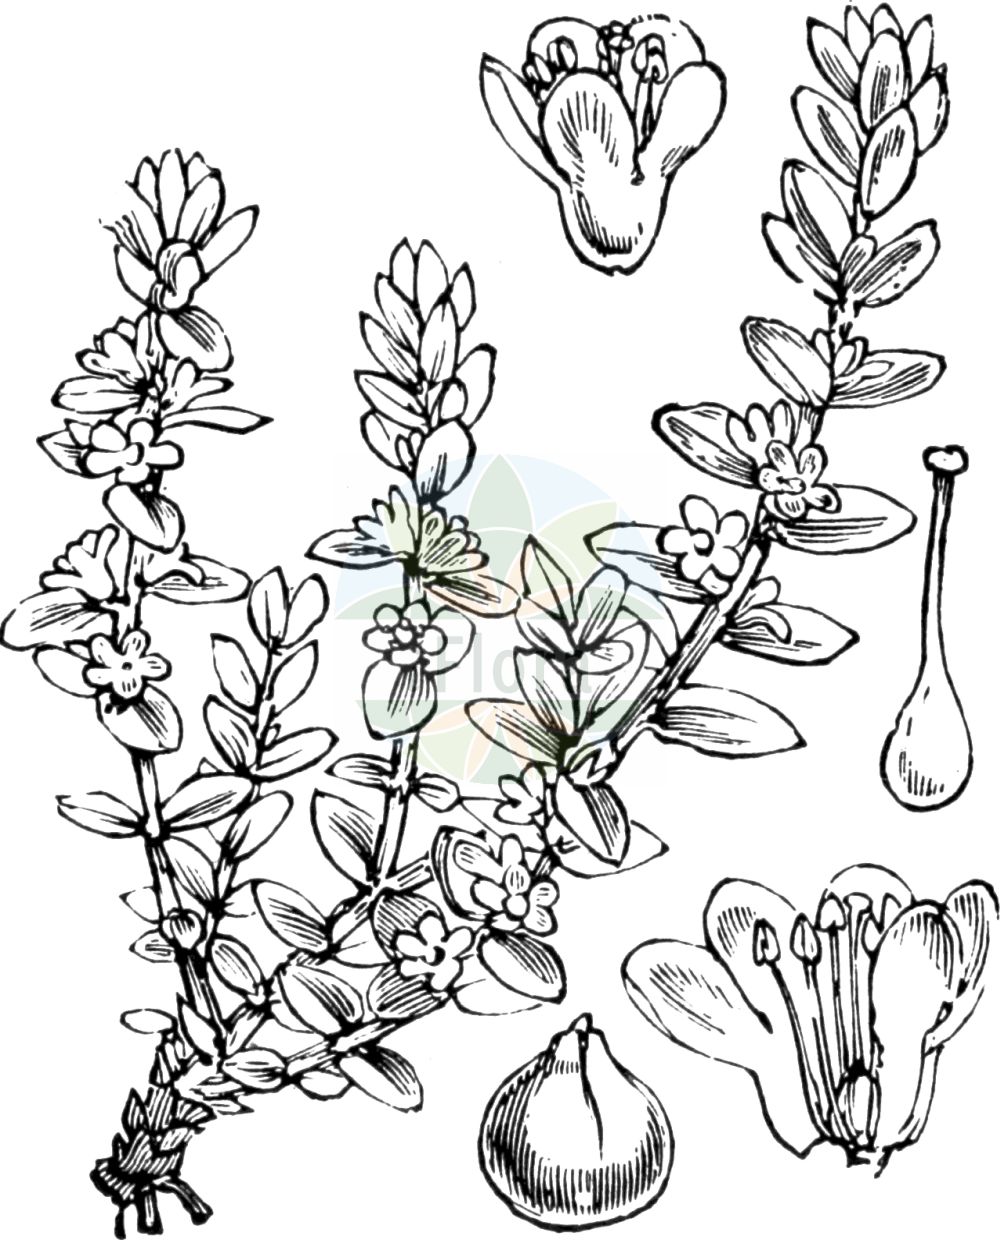 Historische Abbildung von Glaux maritima (Strand-Milchkraut - Sea-milkwort). Das Bild zeigt Blatt, Bluete, Frucht und Same. ---- Historical Drawing of Glaux maritima (Strand-Milchkraut - Sea-milkwort). The image is showing leaf, flower, fruit and seed.(Glaux maritima,Strand-Milchkraut,Sea-milkwort,Glaux maritima,Strand-Milchkraut,Strandmilchkraut,Sea-milkwort,Glaux,Milchkraut,Milkwort,Primulaceae,Schlüsselblumengewächse,Primrose family,Blatt,Bluete,Frucht,Same,leaf,flower,fruit,seed,Fitch et al. (1880))